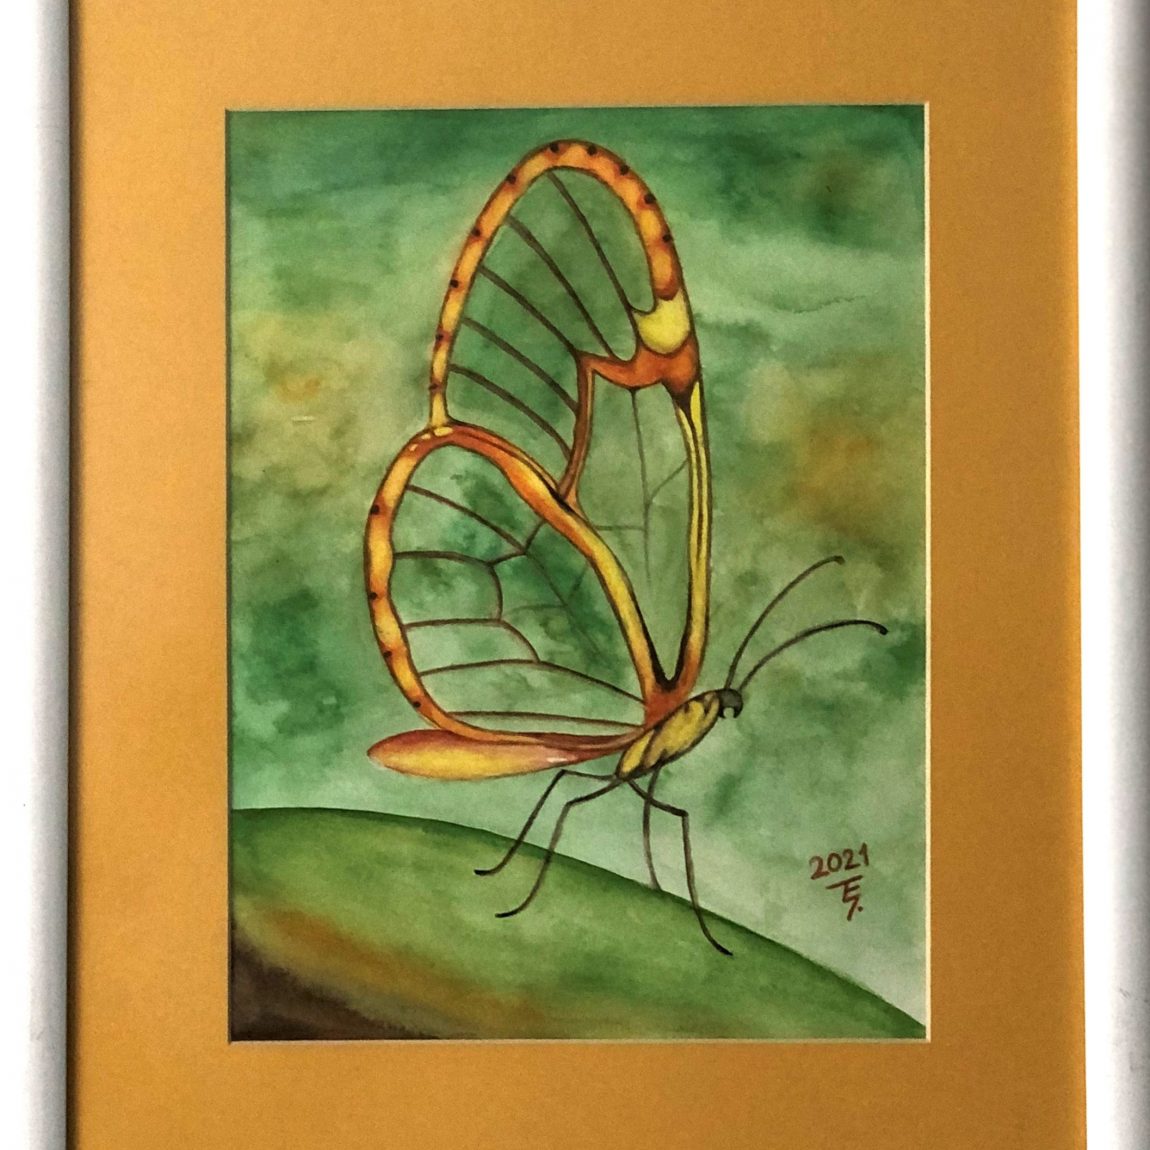 ŞULE AKTAŞ- "Yellow Butterfly" Teknik: Suluboya Ölçü: 34,5 x 41,5 cm Fiyat : 250 TL